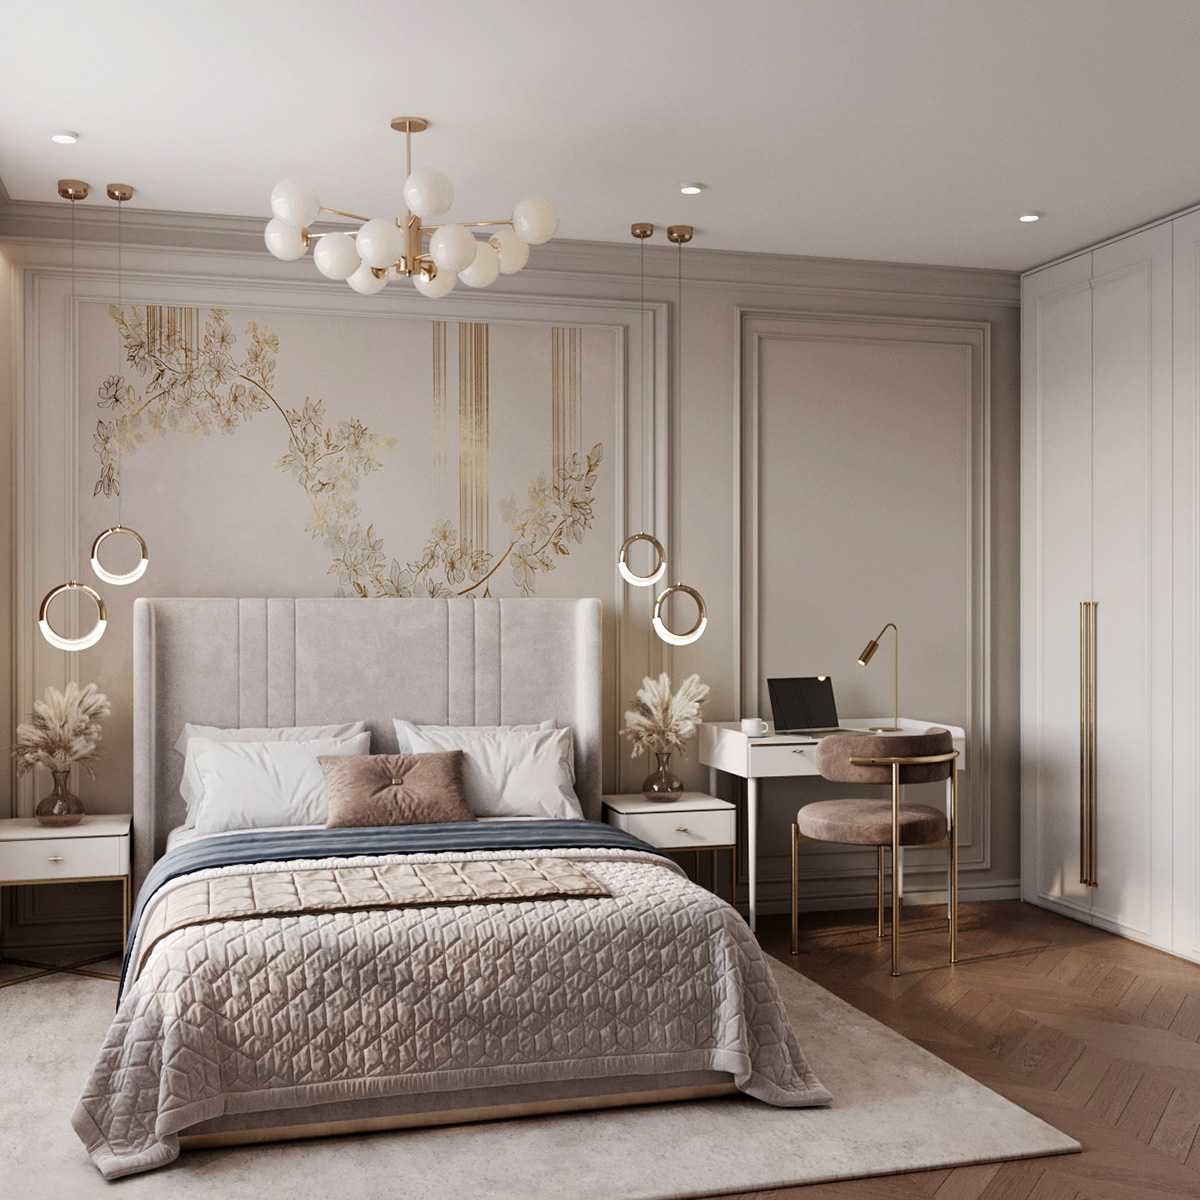 визуализация дизайн интерьера interior design  3ds max visualization CoronaRender  спальня Визуализация интерьера